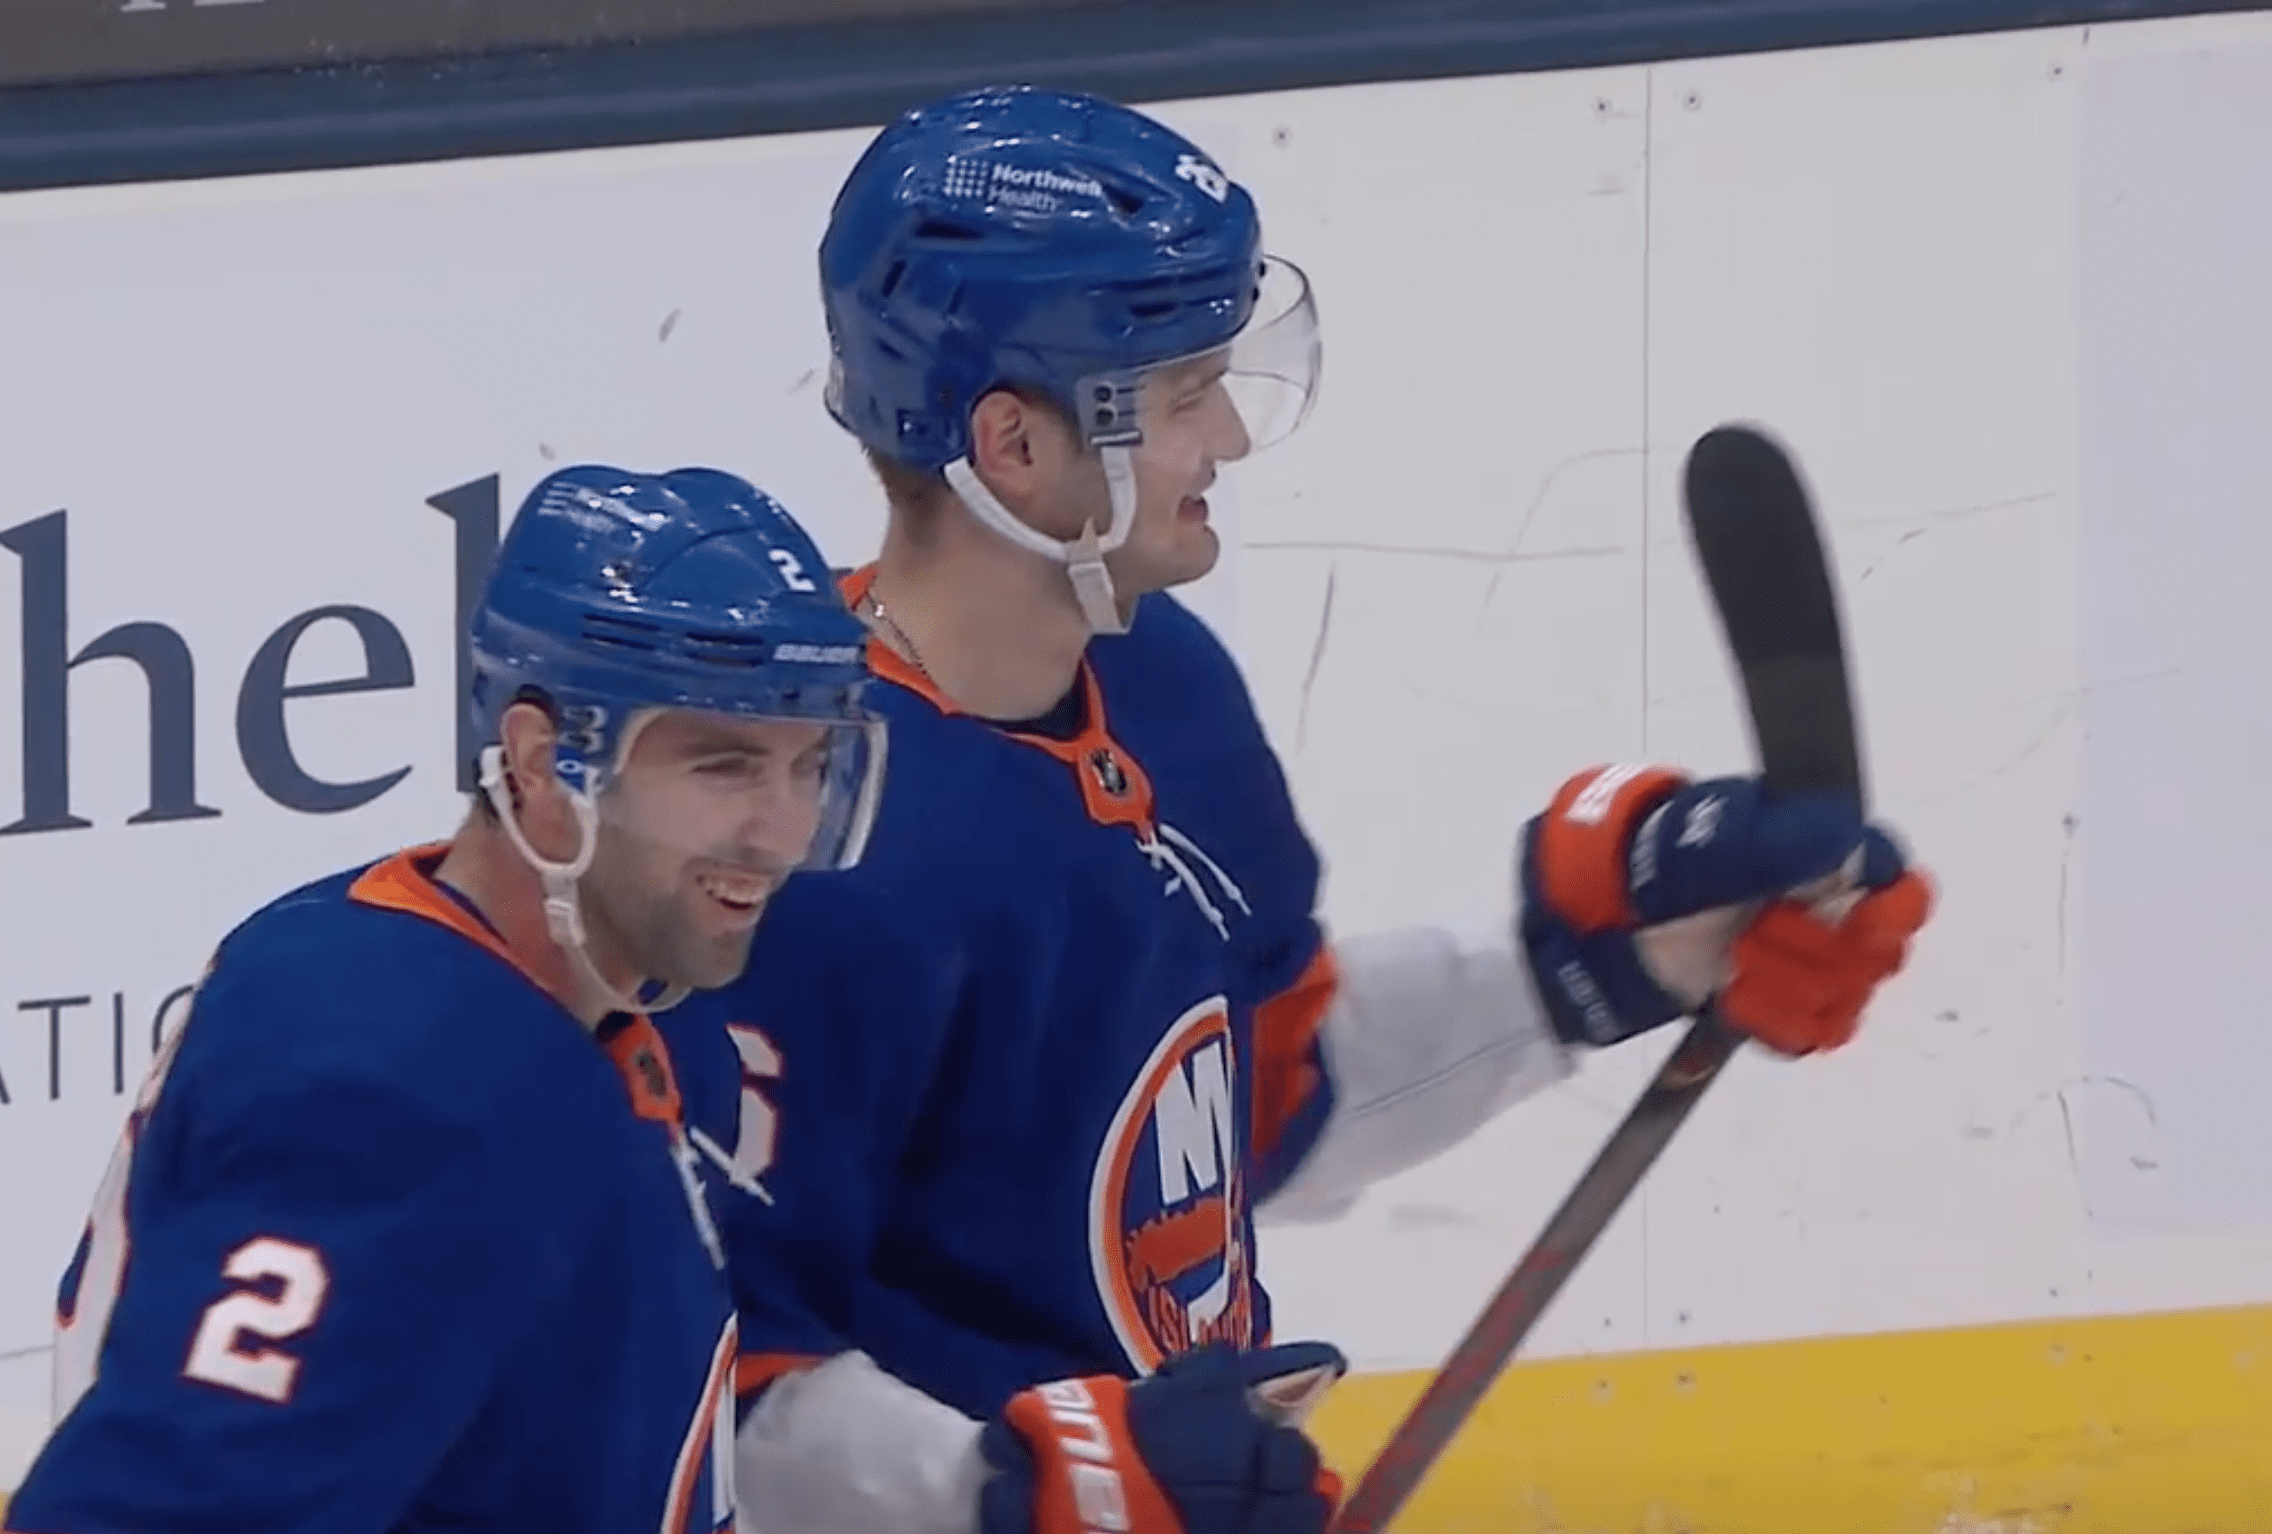 New York Islanders win over Pens